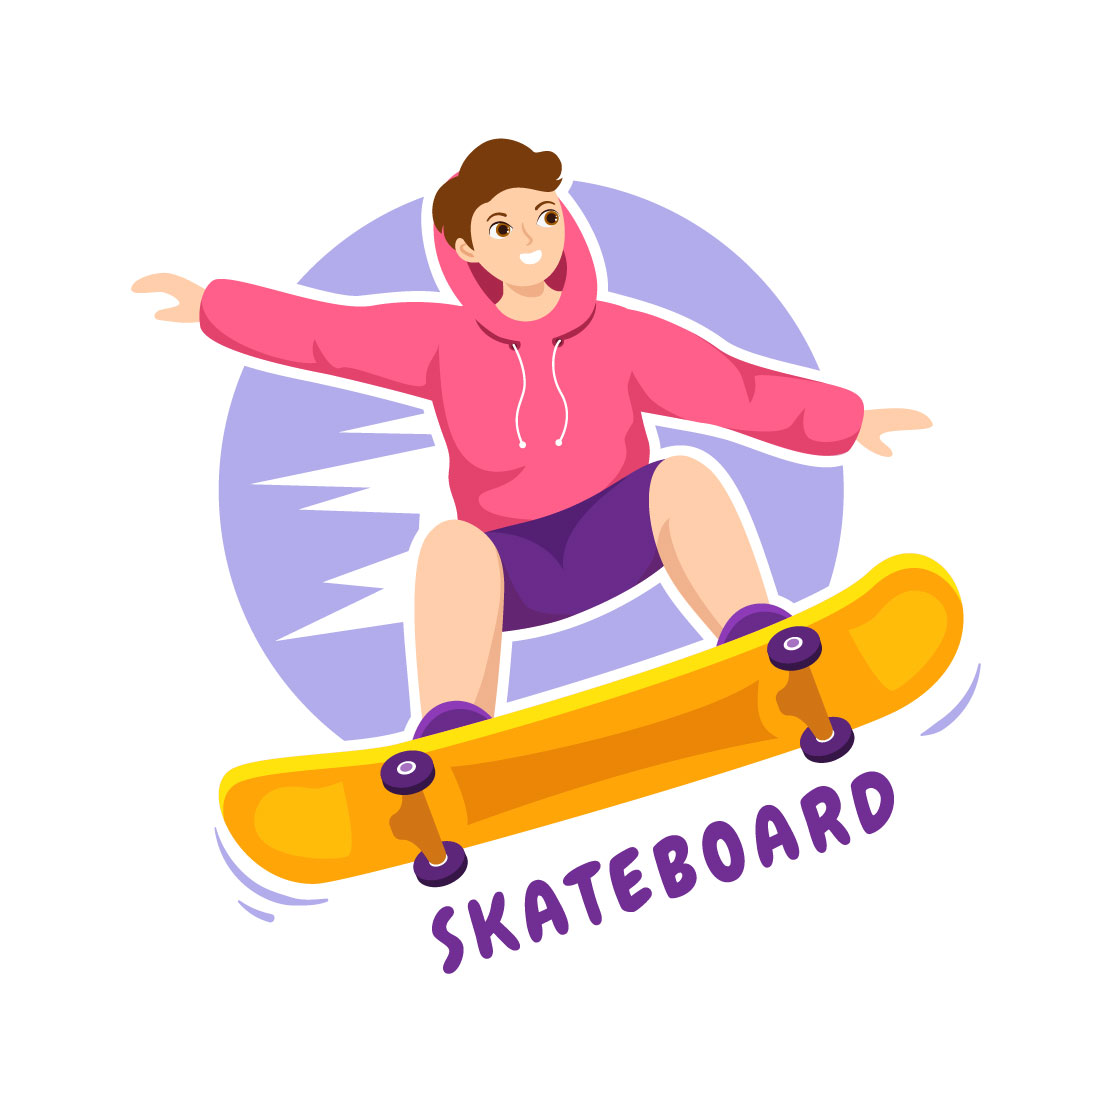 14 Skateboard Sport Illustration main cover.